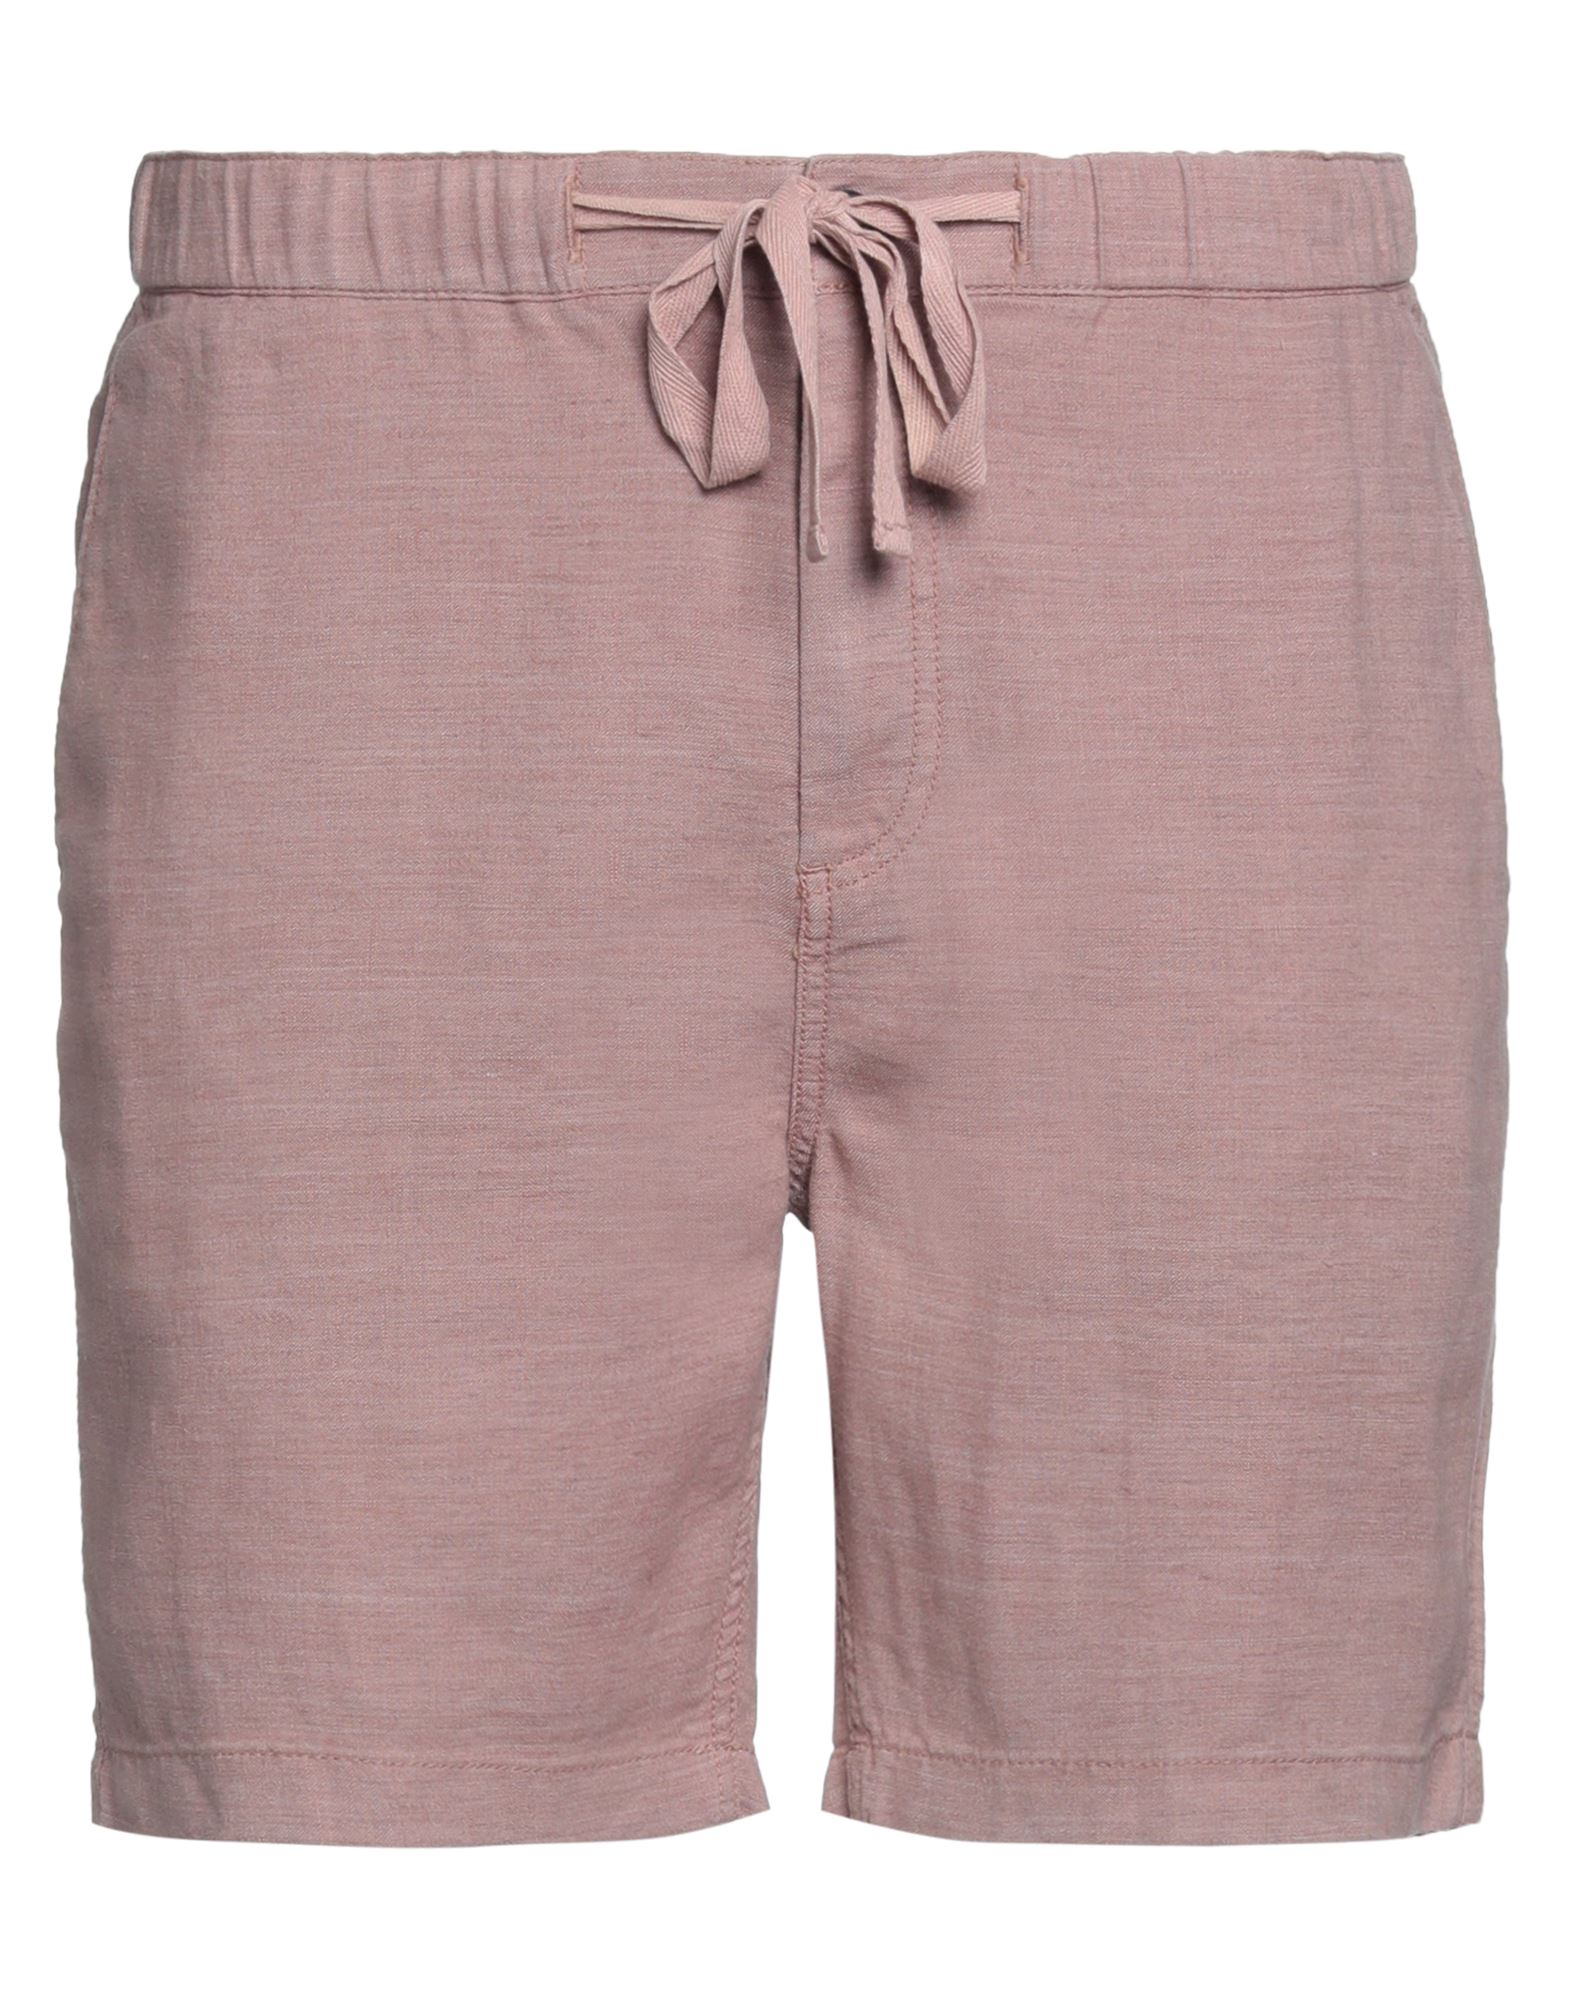 John Varvatos Man Shorts & Bermuda Shorts Pastel Pink Size 36 Linen, Polyester